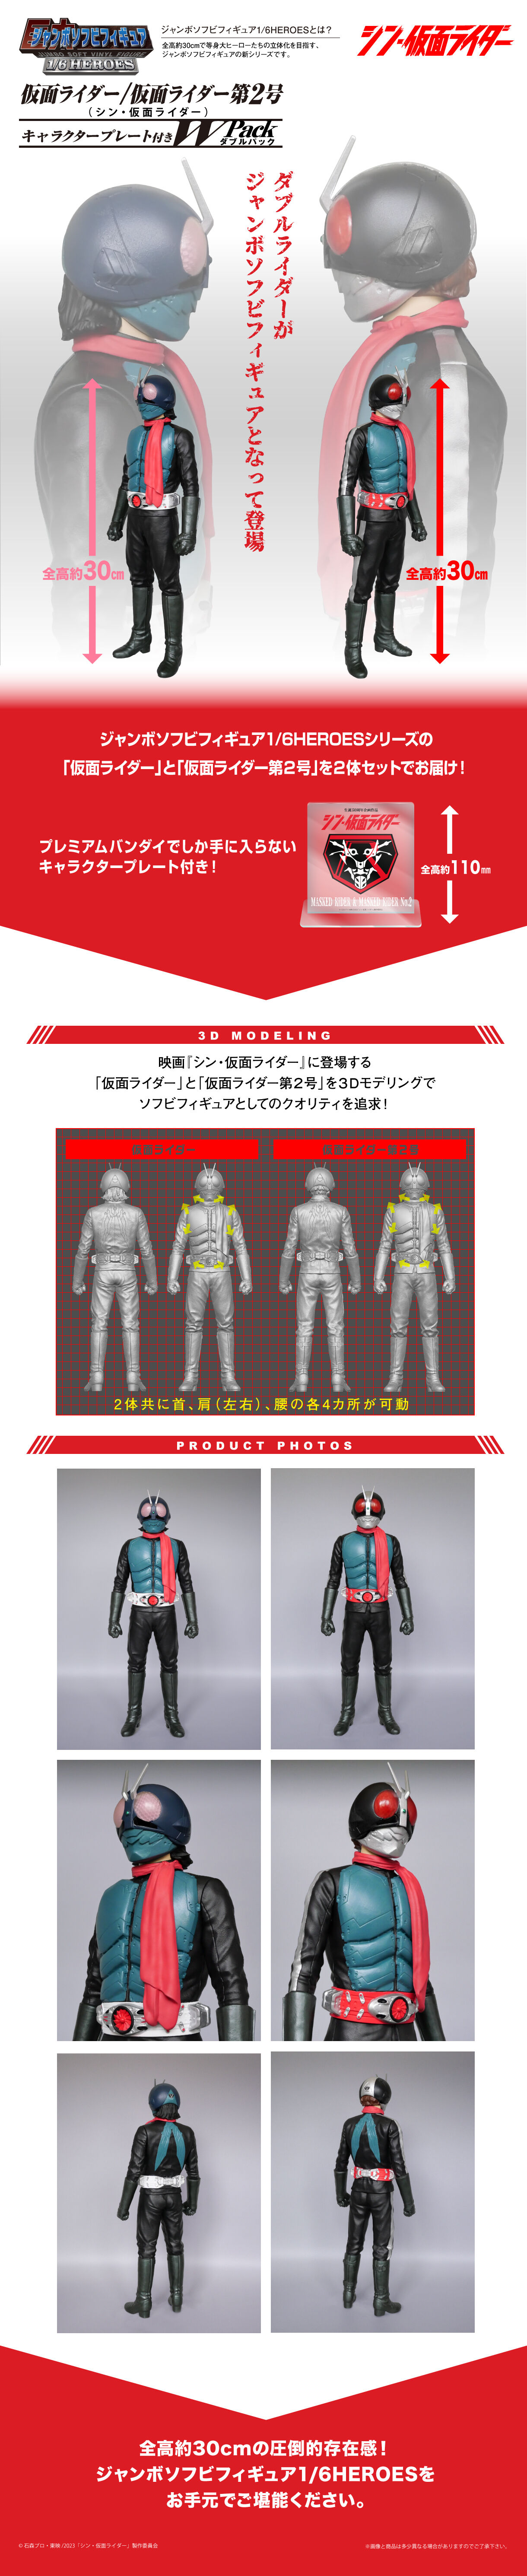 仮面ライダー ソフトフィギュアシリーズ 特撮 | lincrew.main.jp